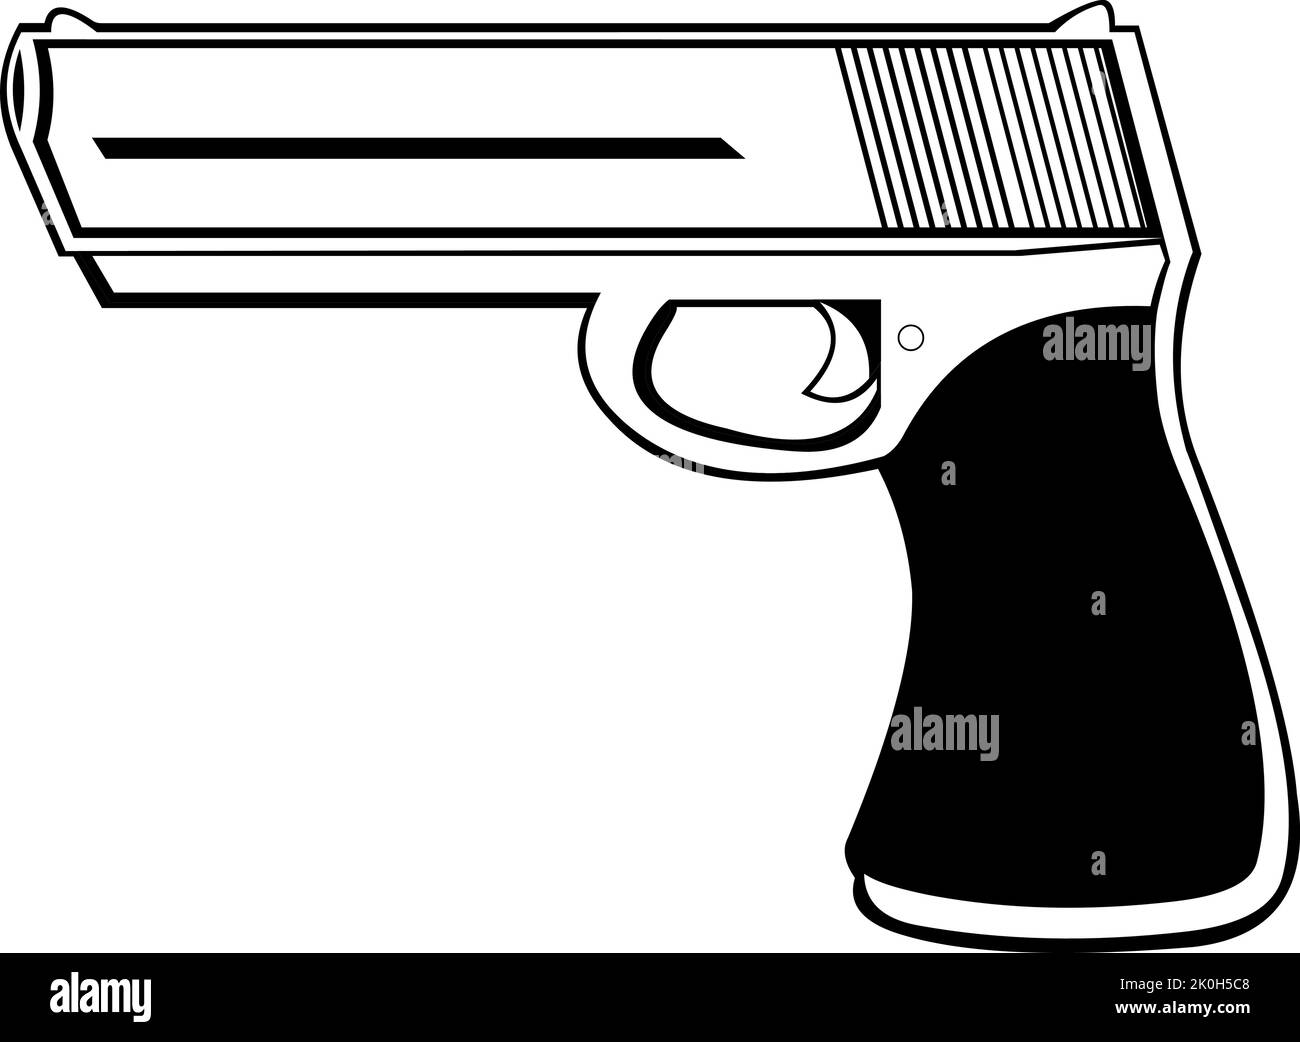 Vektordarstellung einer Pistolenfeuerwaffe, in Schwarz und Weiß gezeichnet Stock Vektor